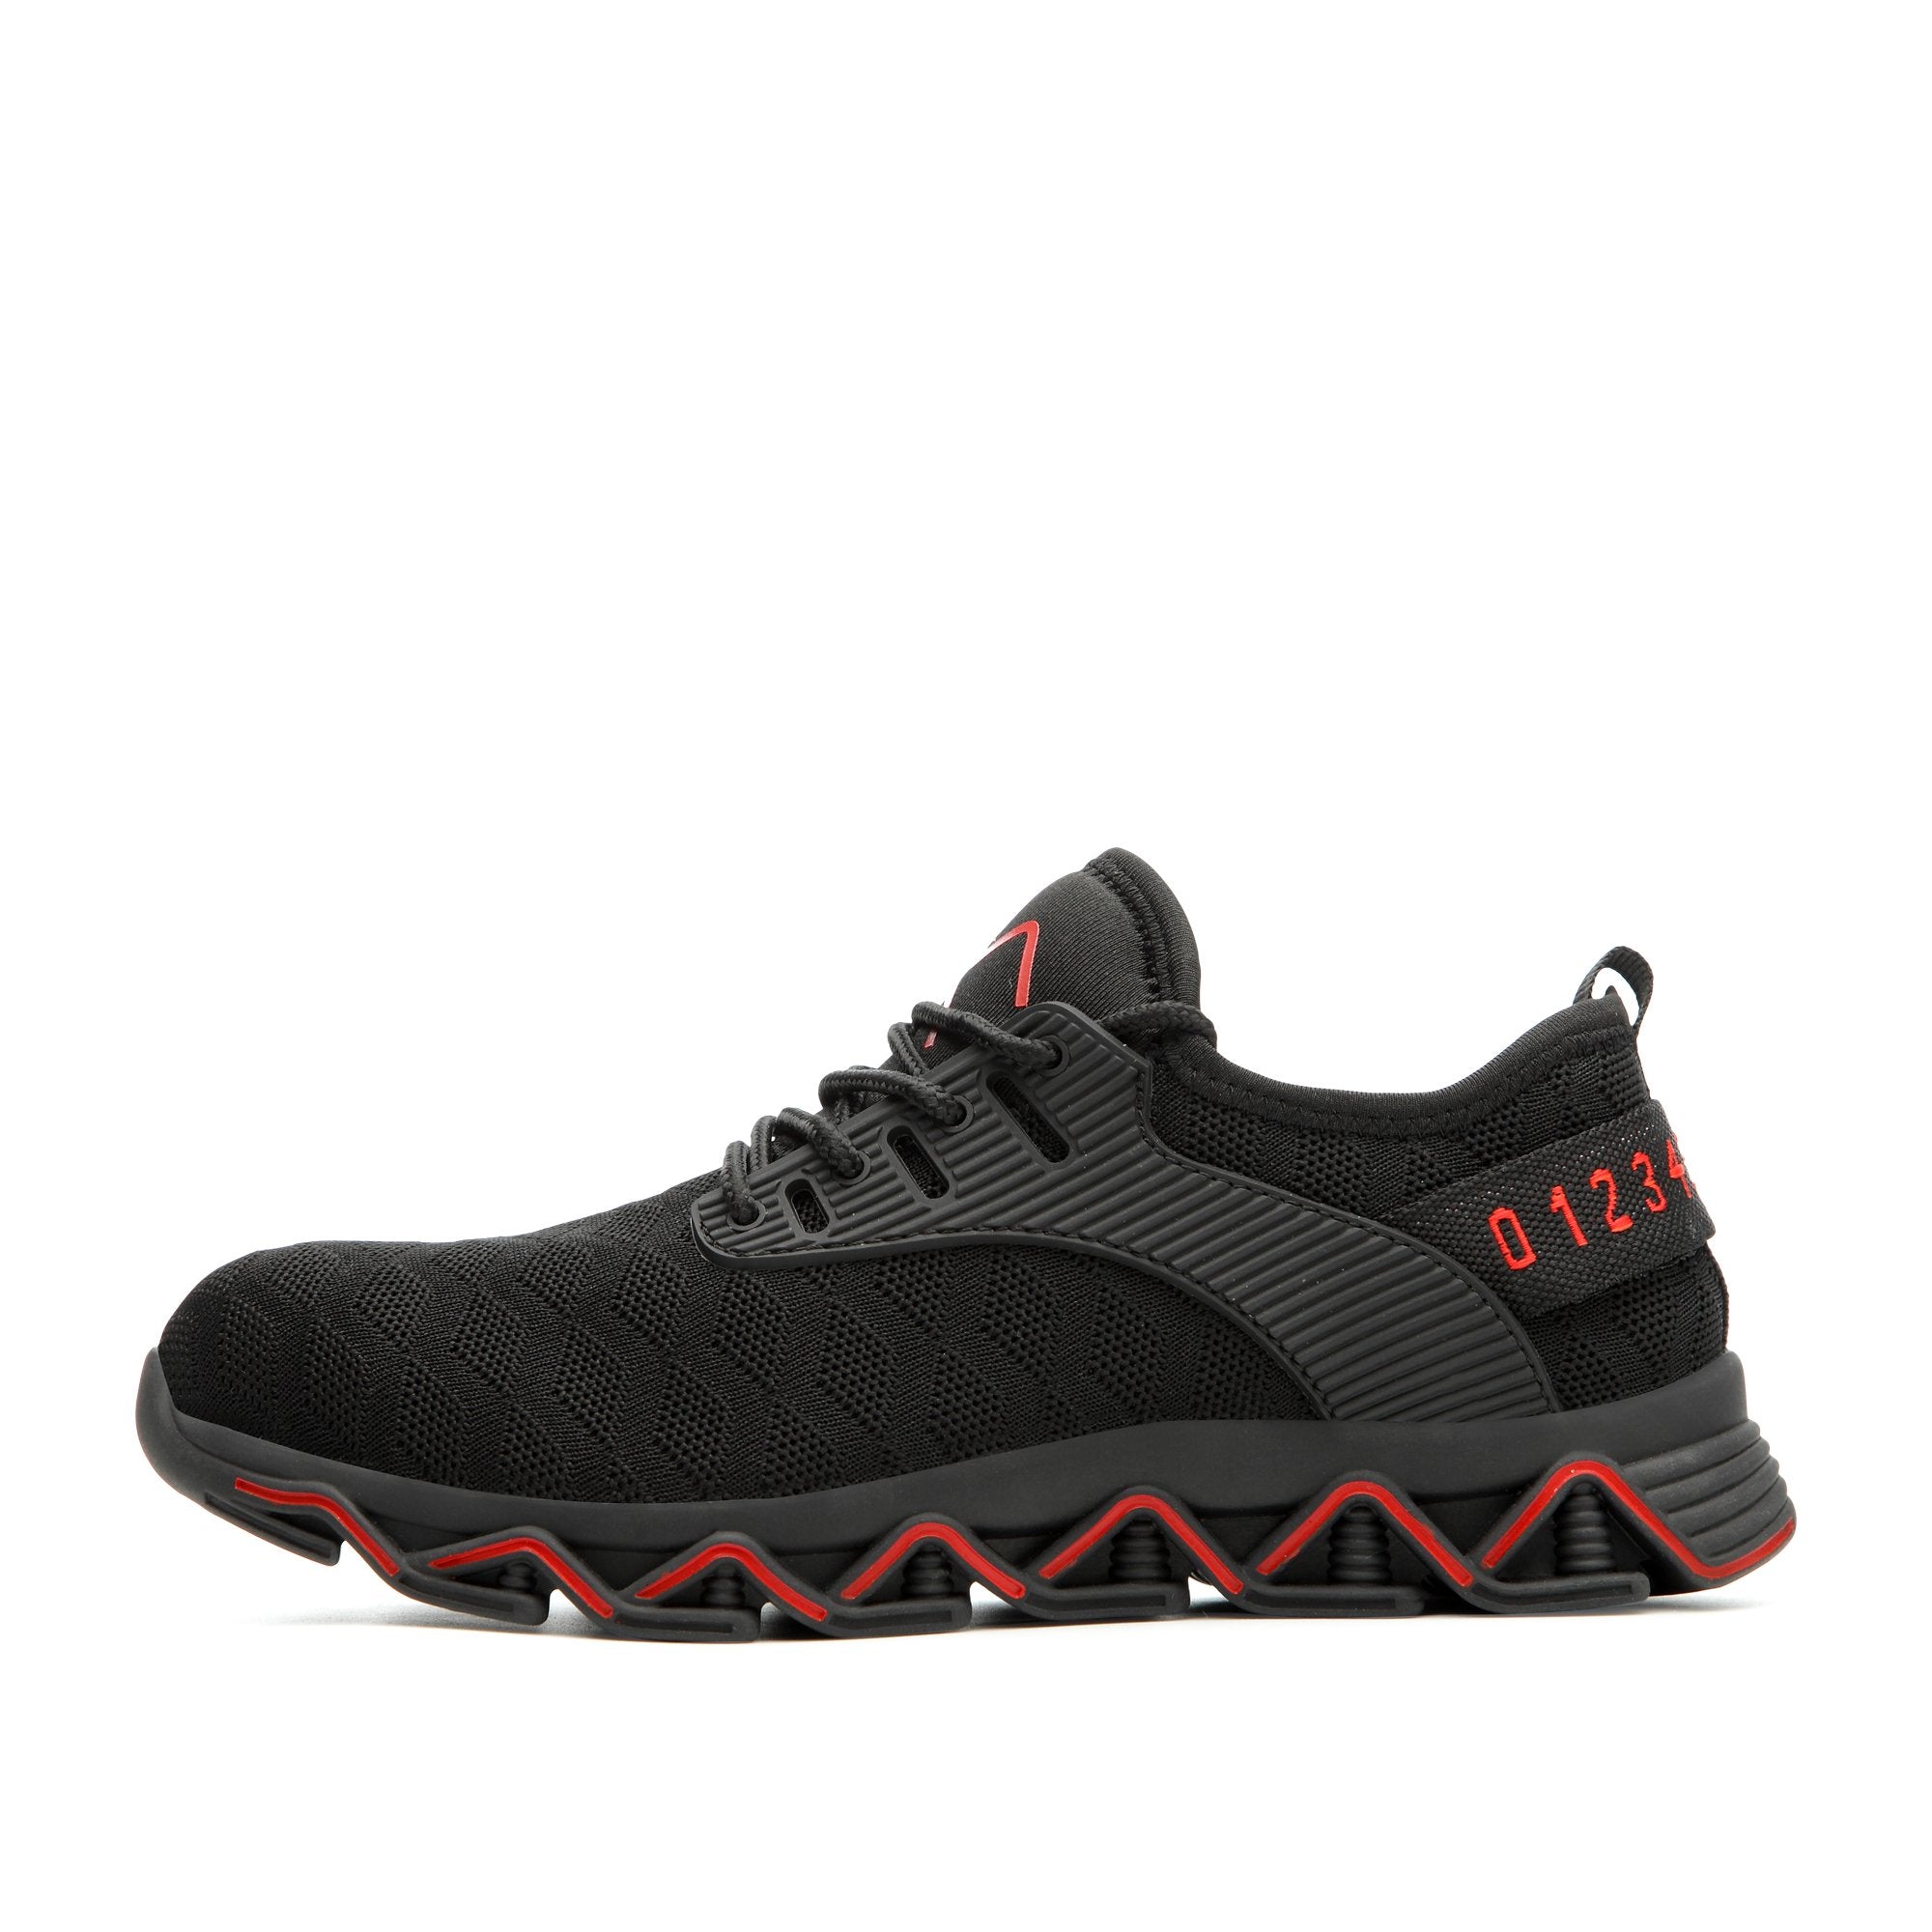 Ziczac Black Red - Indestructible Shoes